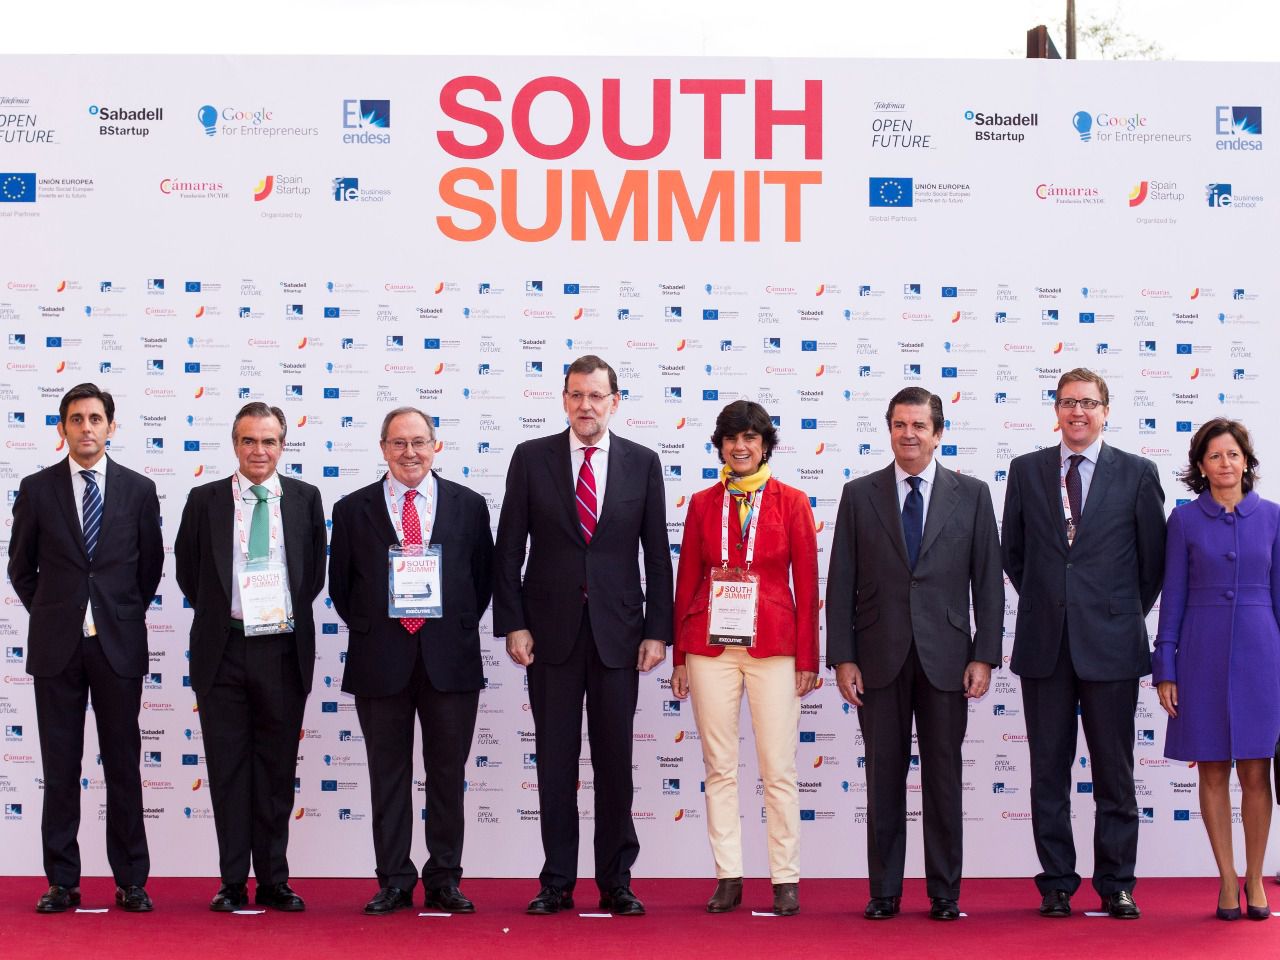 Rajoy abre la puerta grande al emprendimiento en South Summit 2015